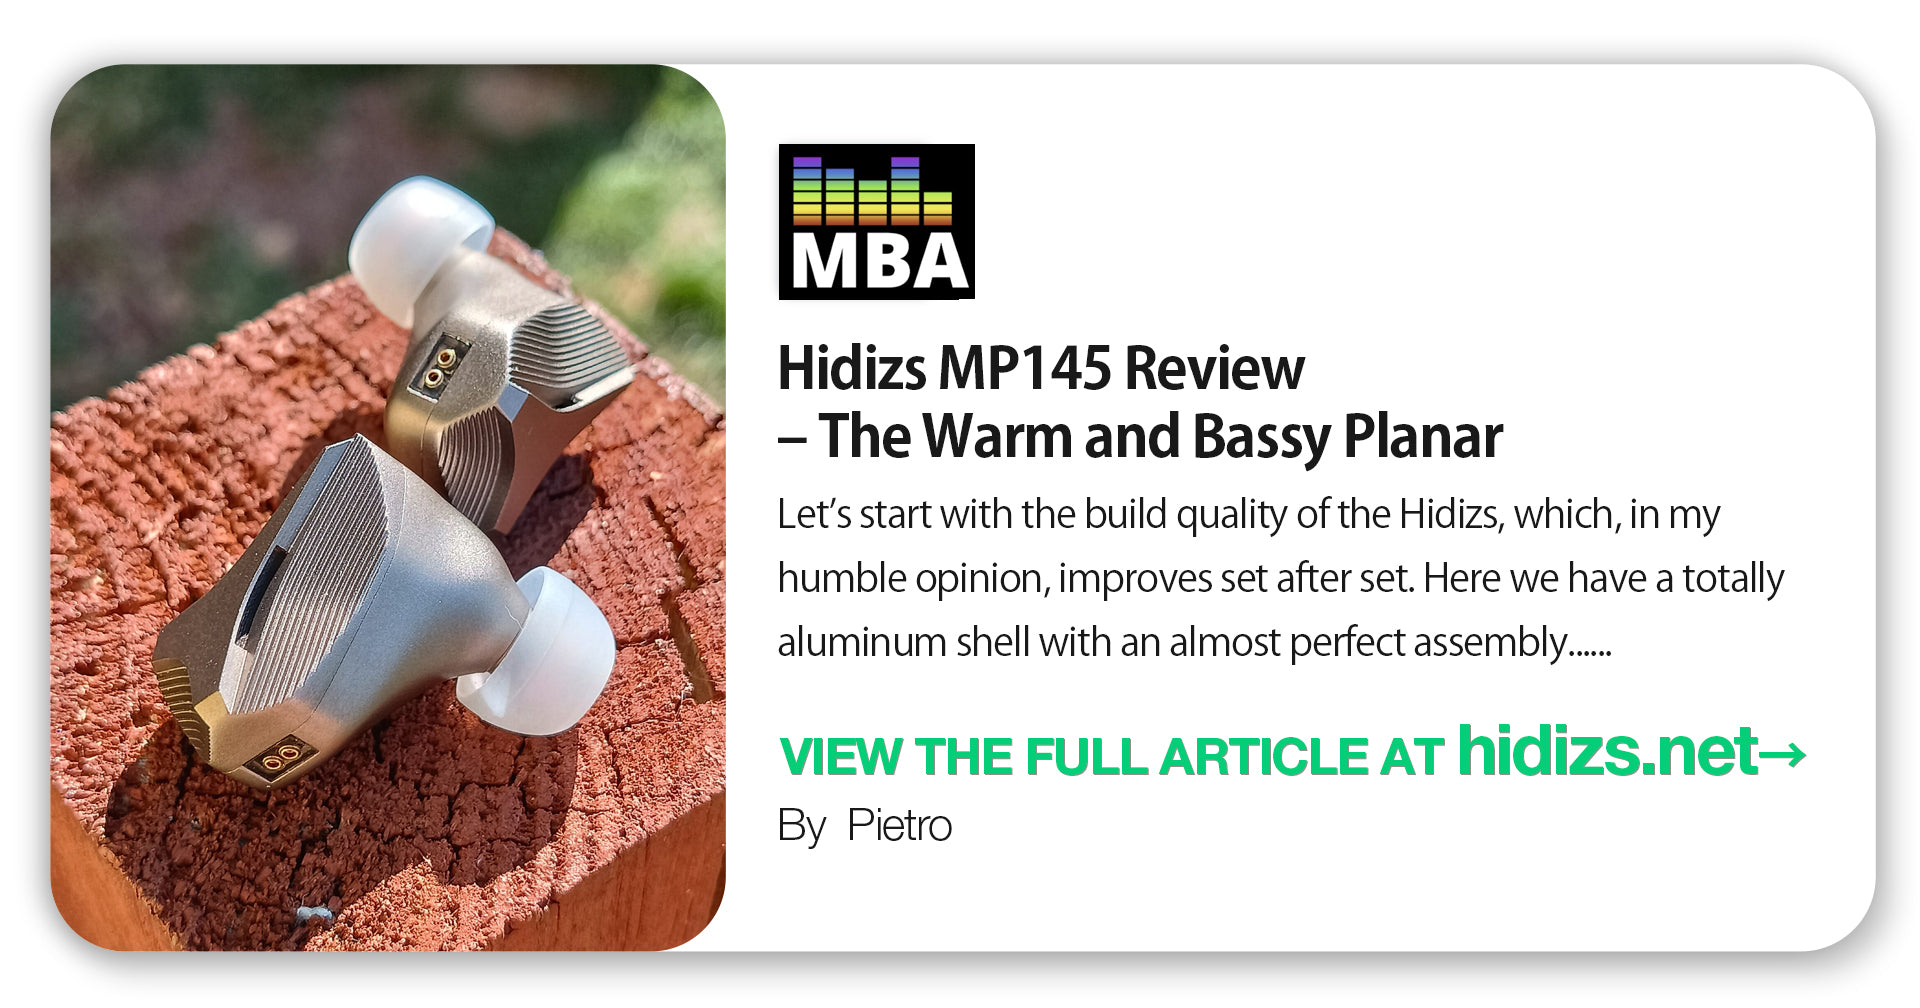 Hidizs MP145 Review - Pietro